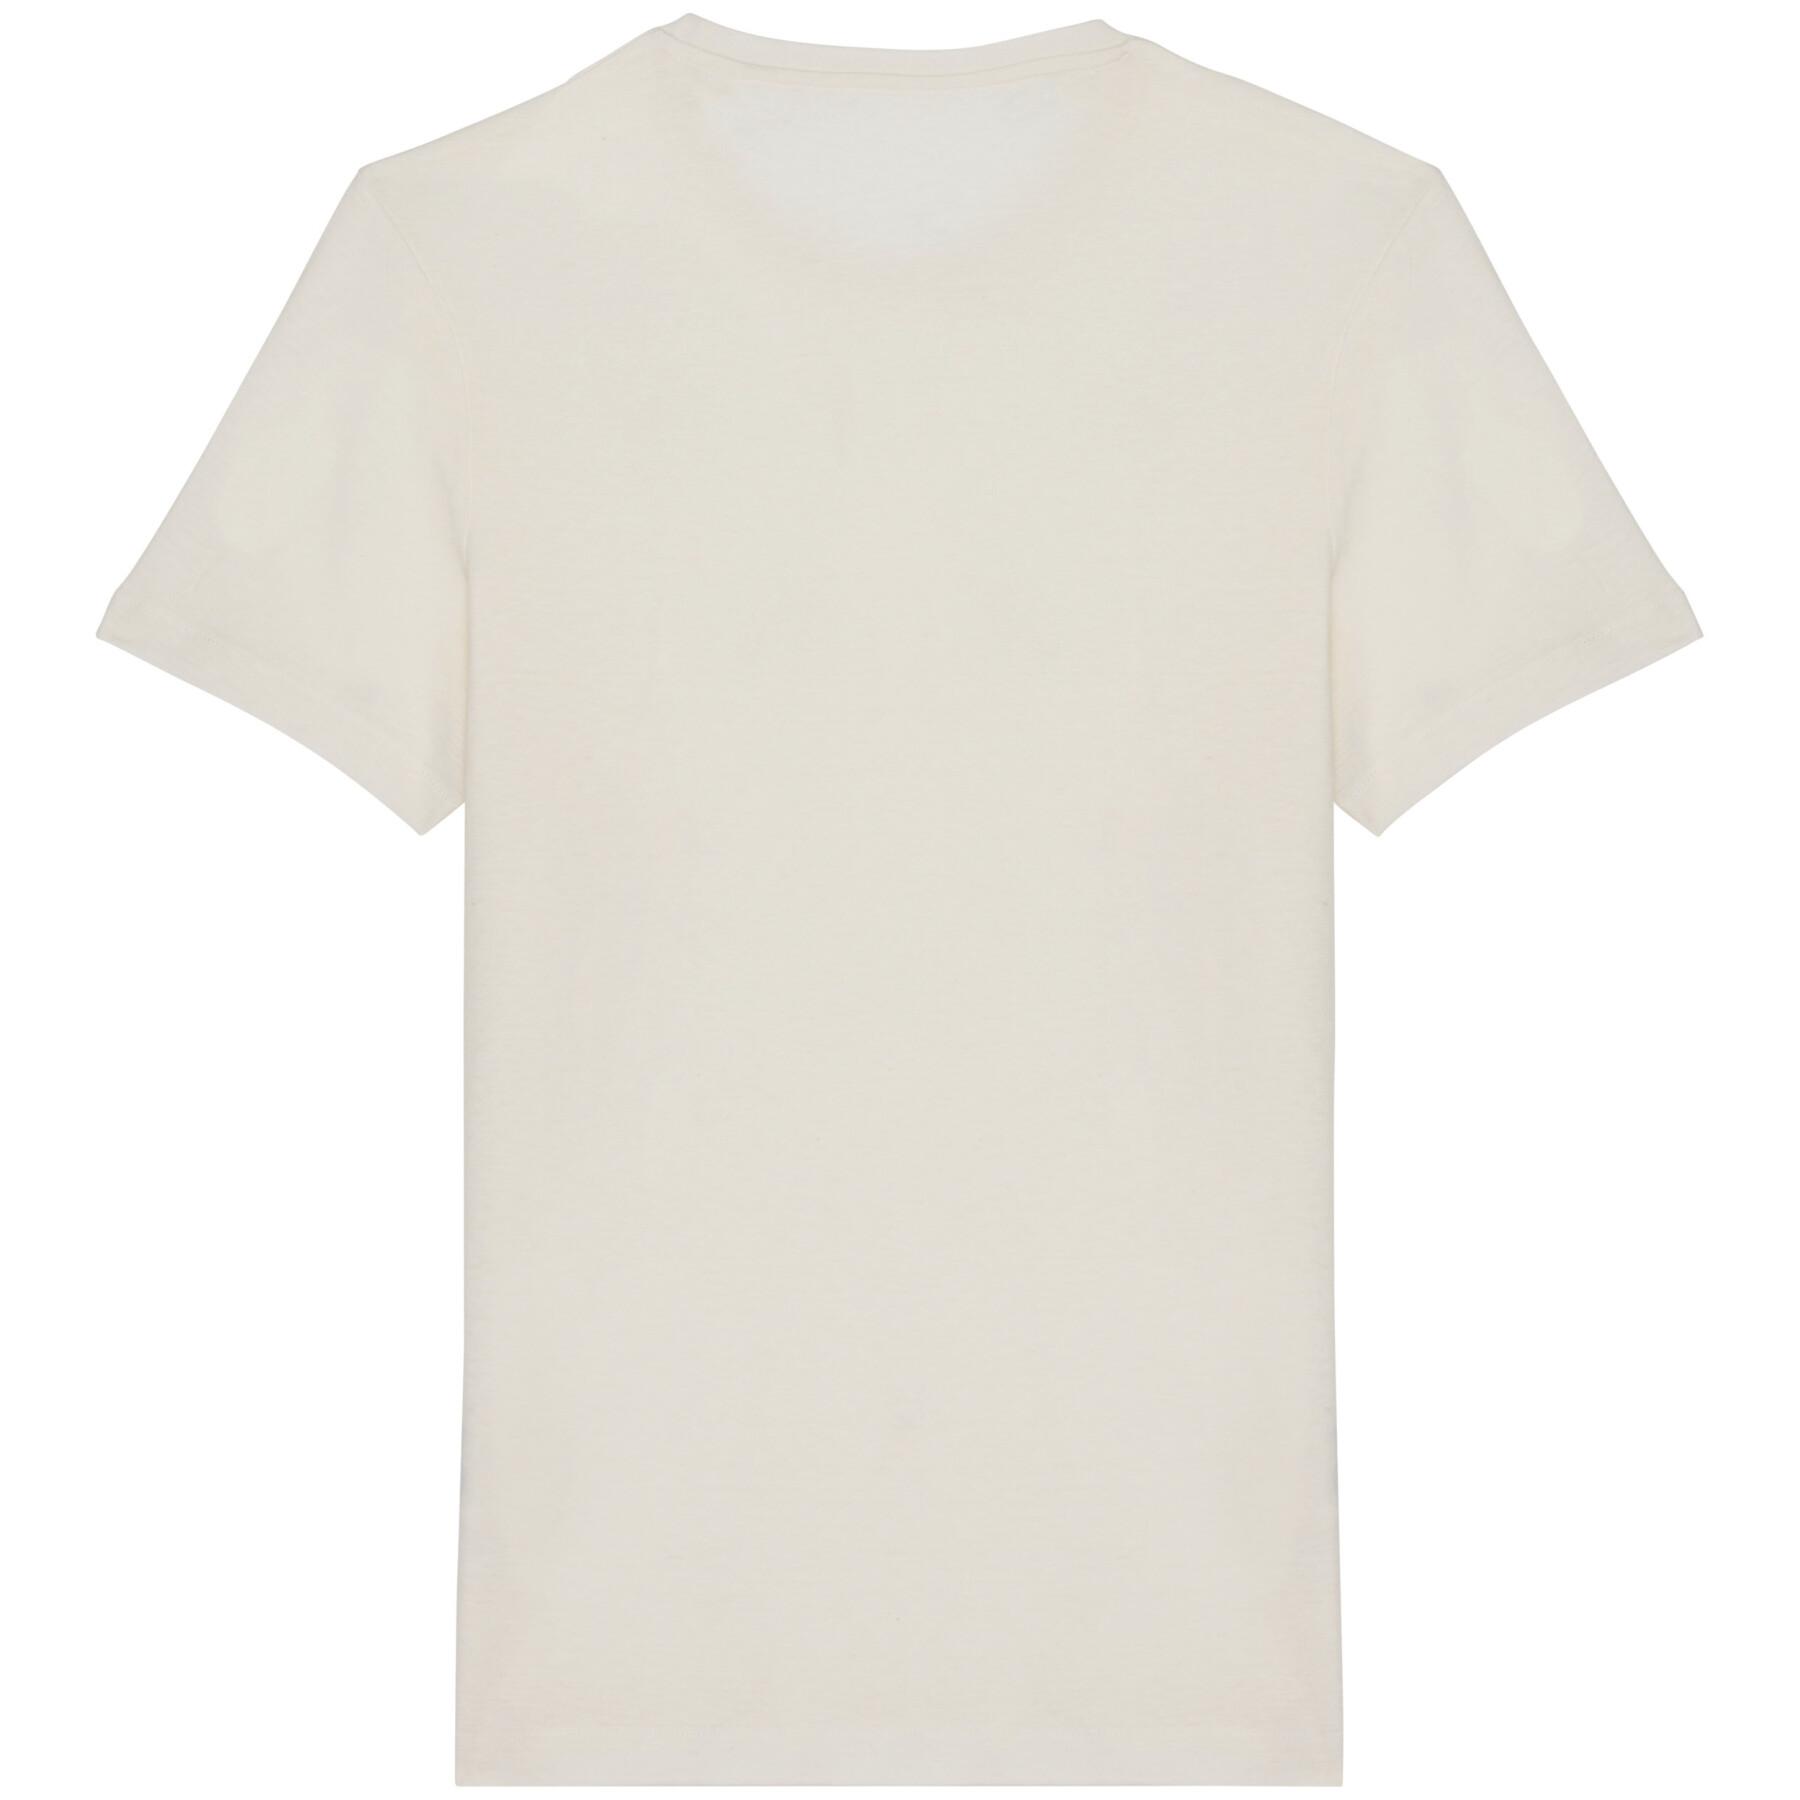 Organic cotton and linen T-shirt Native Spirit